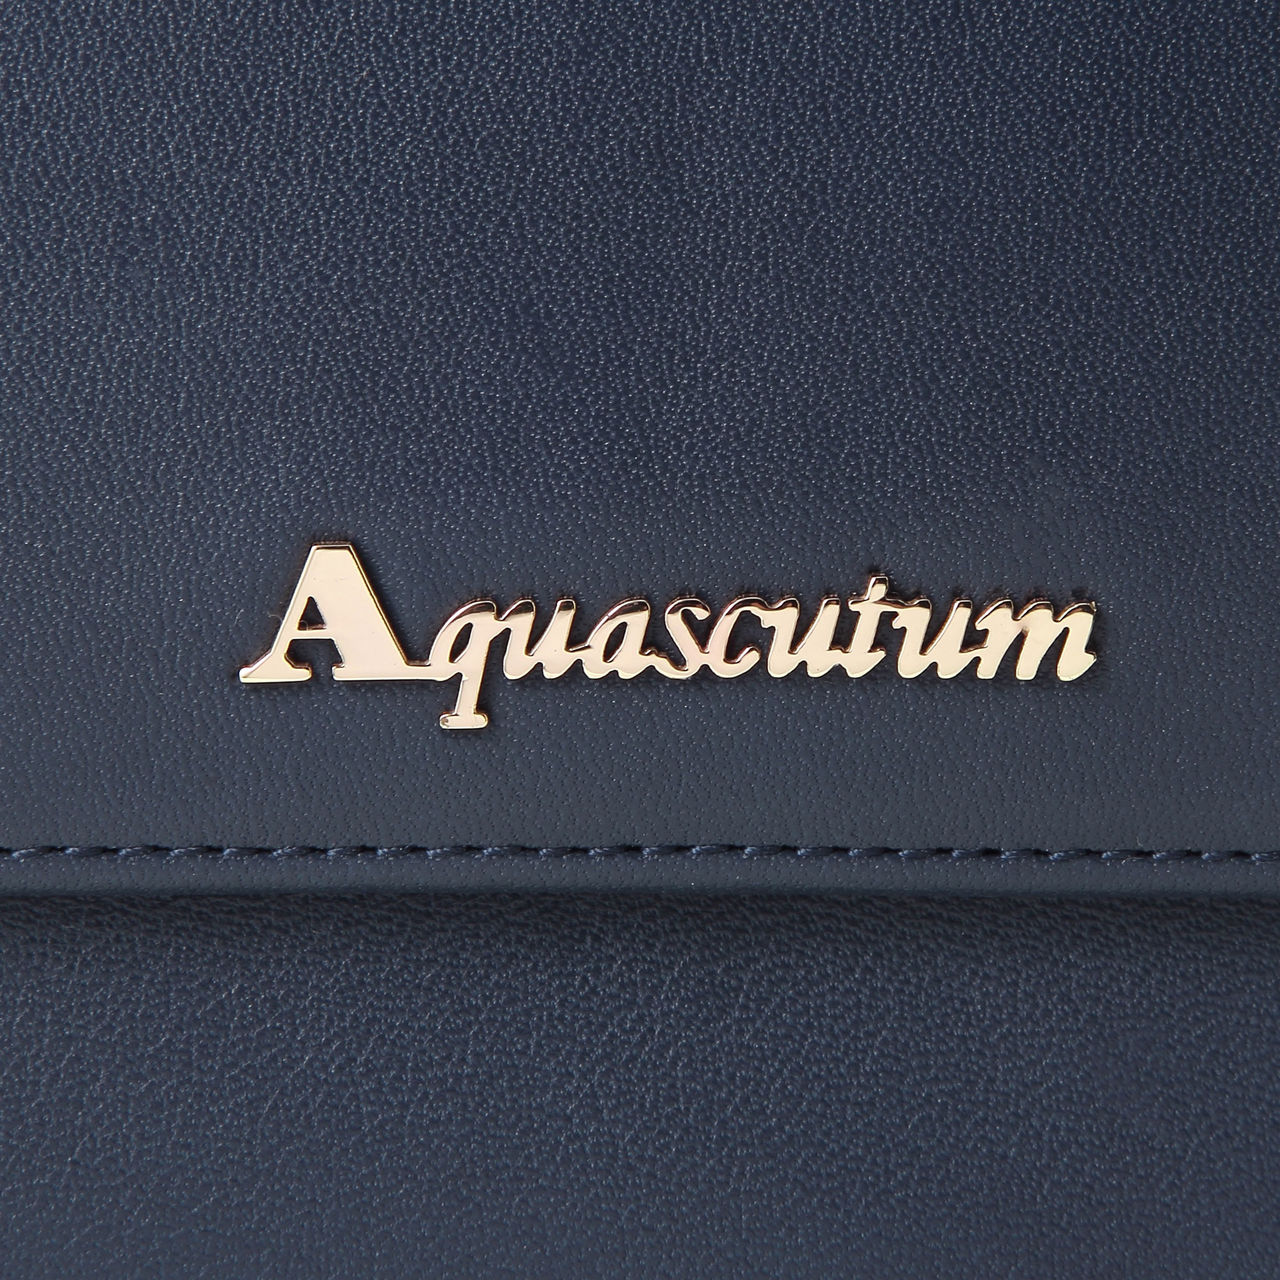 雅格獅丹(Aquascutum)